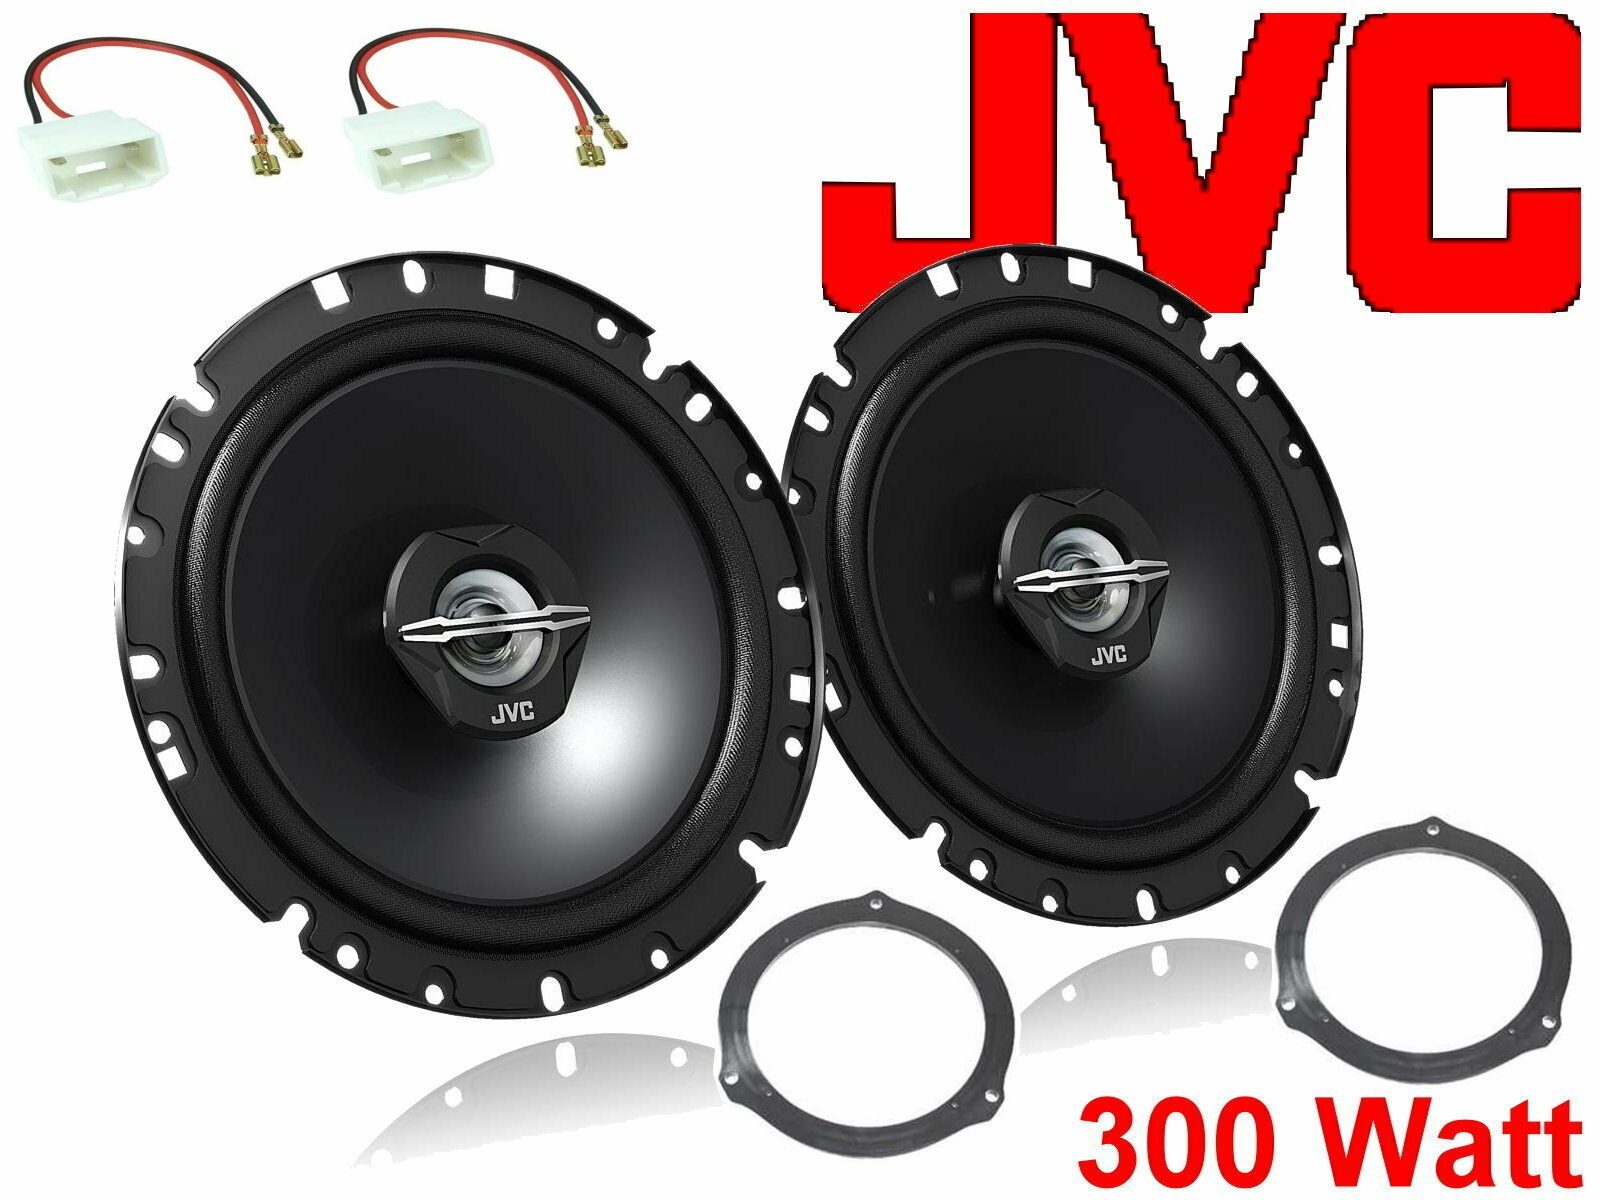 DSX JVC passend für Ford C-Max Bj 05/03-11/10 Lautspre Auto-Lautsprecher (30 W)